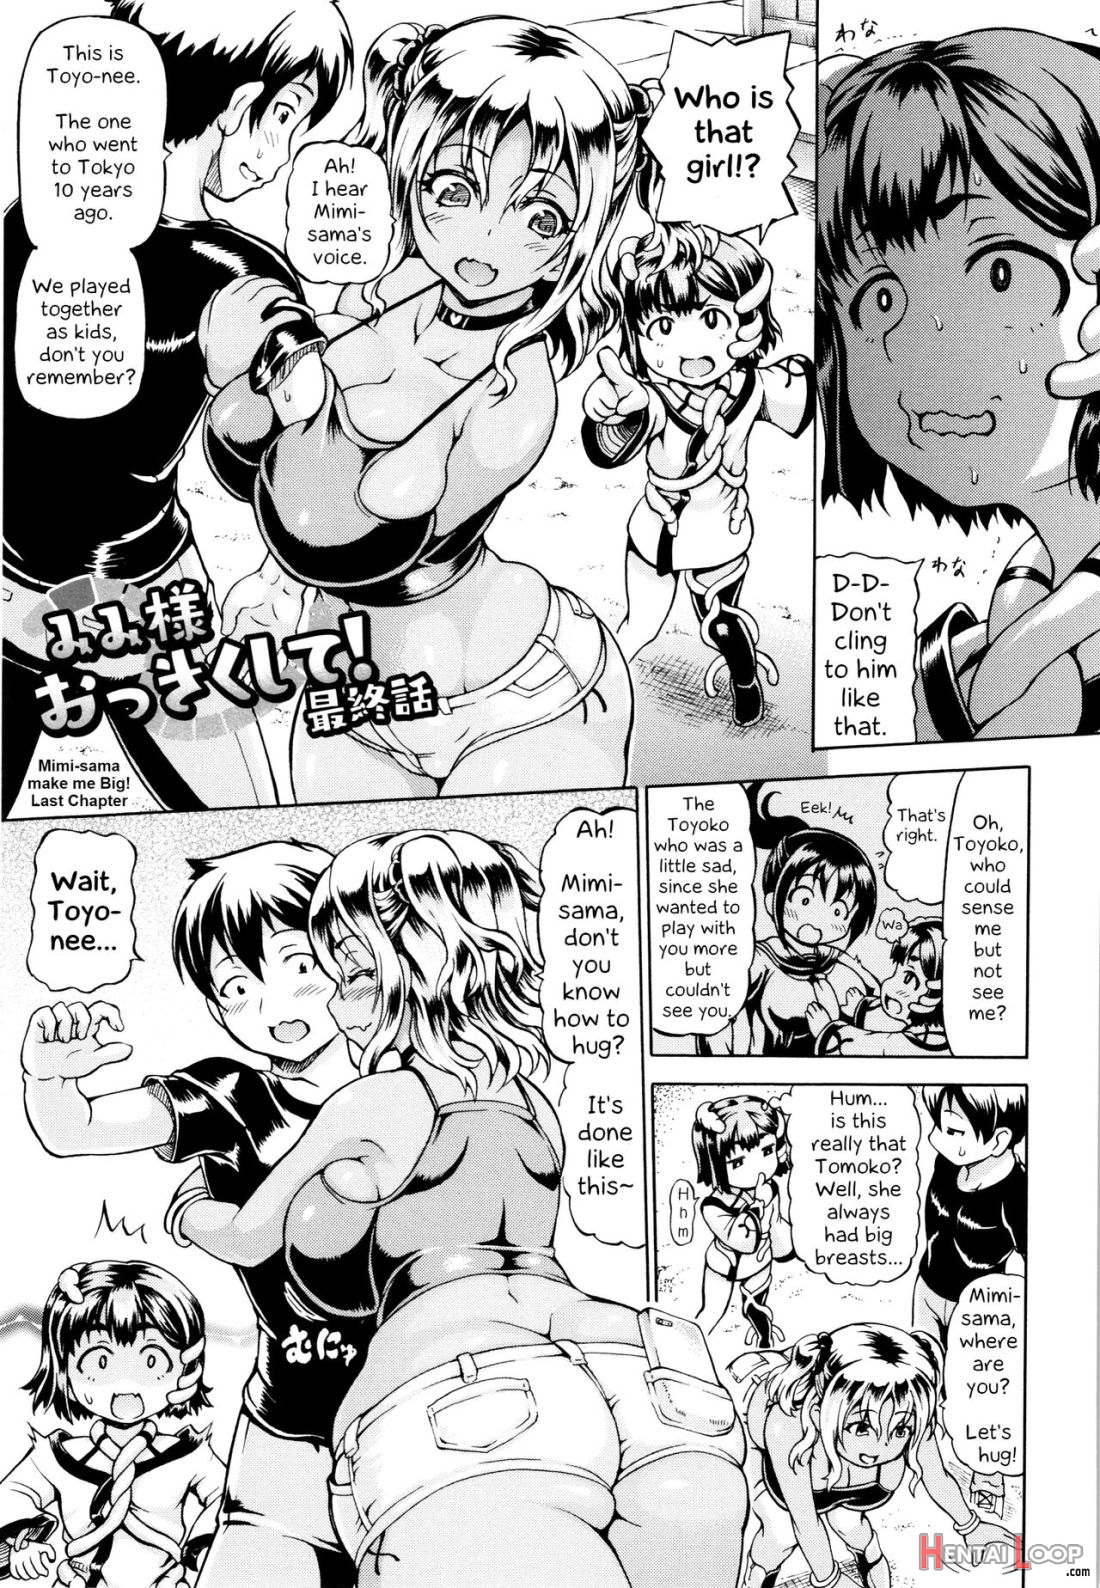 Mimi-sama Okkiku Shite! page 49